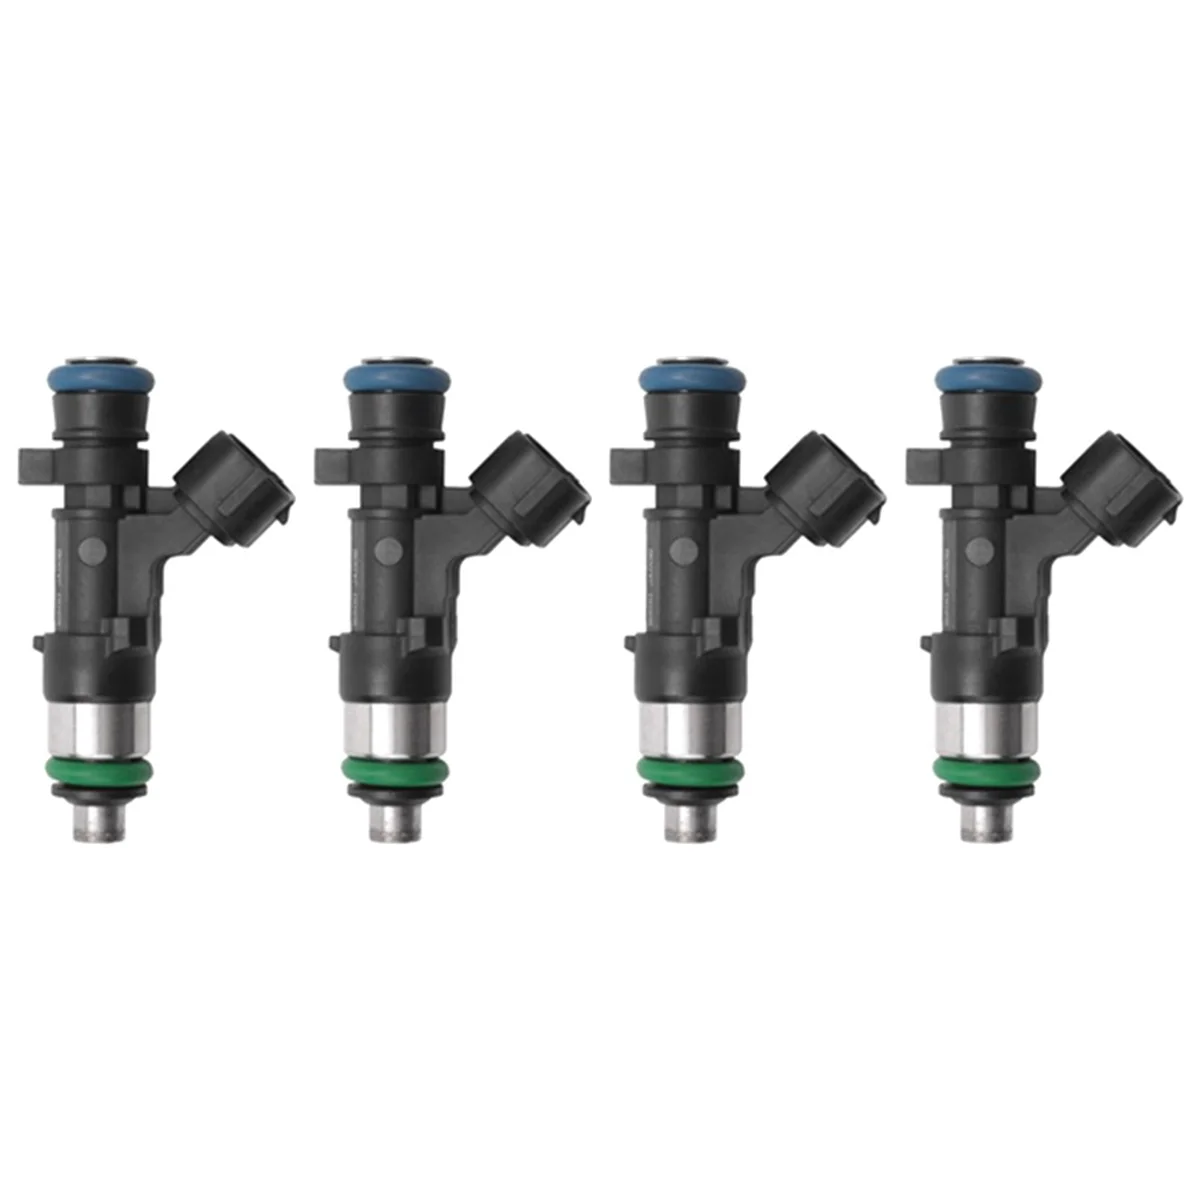 

4Pcs Fuel Injector Nozzle for Nissan Altima 2007-2013 Rogue Sentra 2008-2014 2.5L L4 16600-JA000 16600-JA00B 0280158130